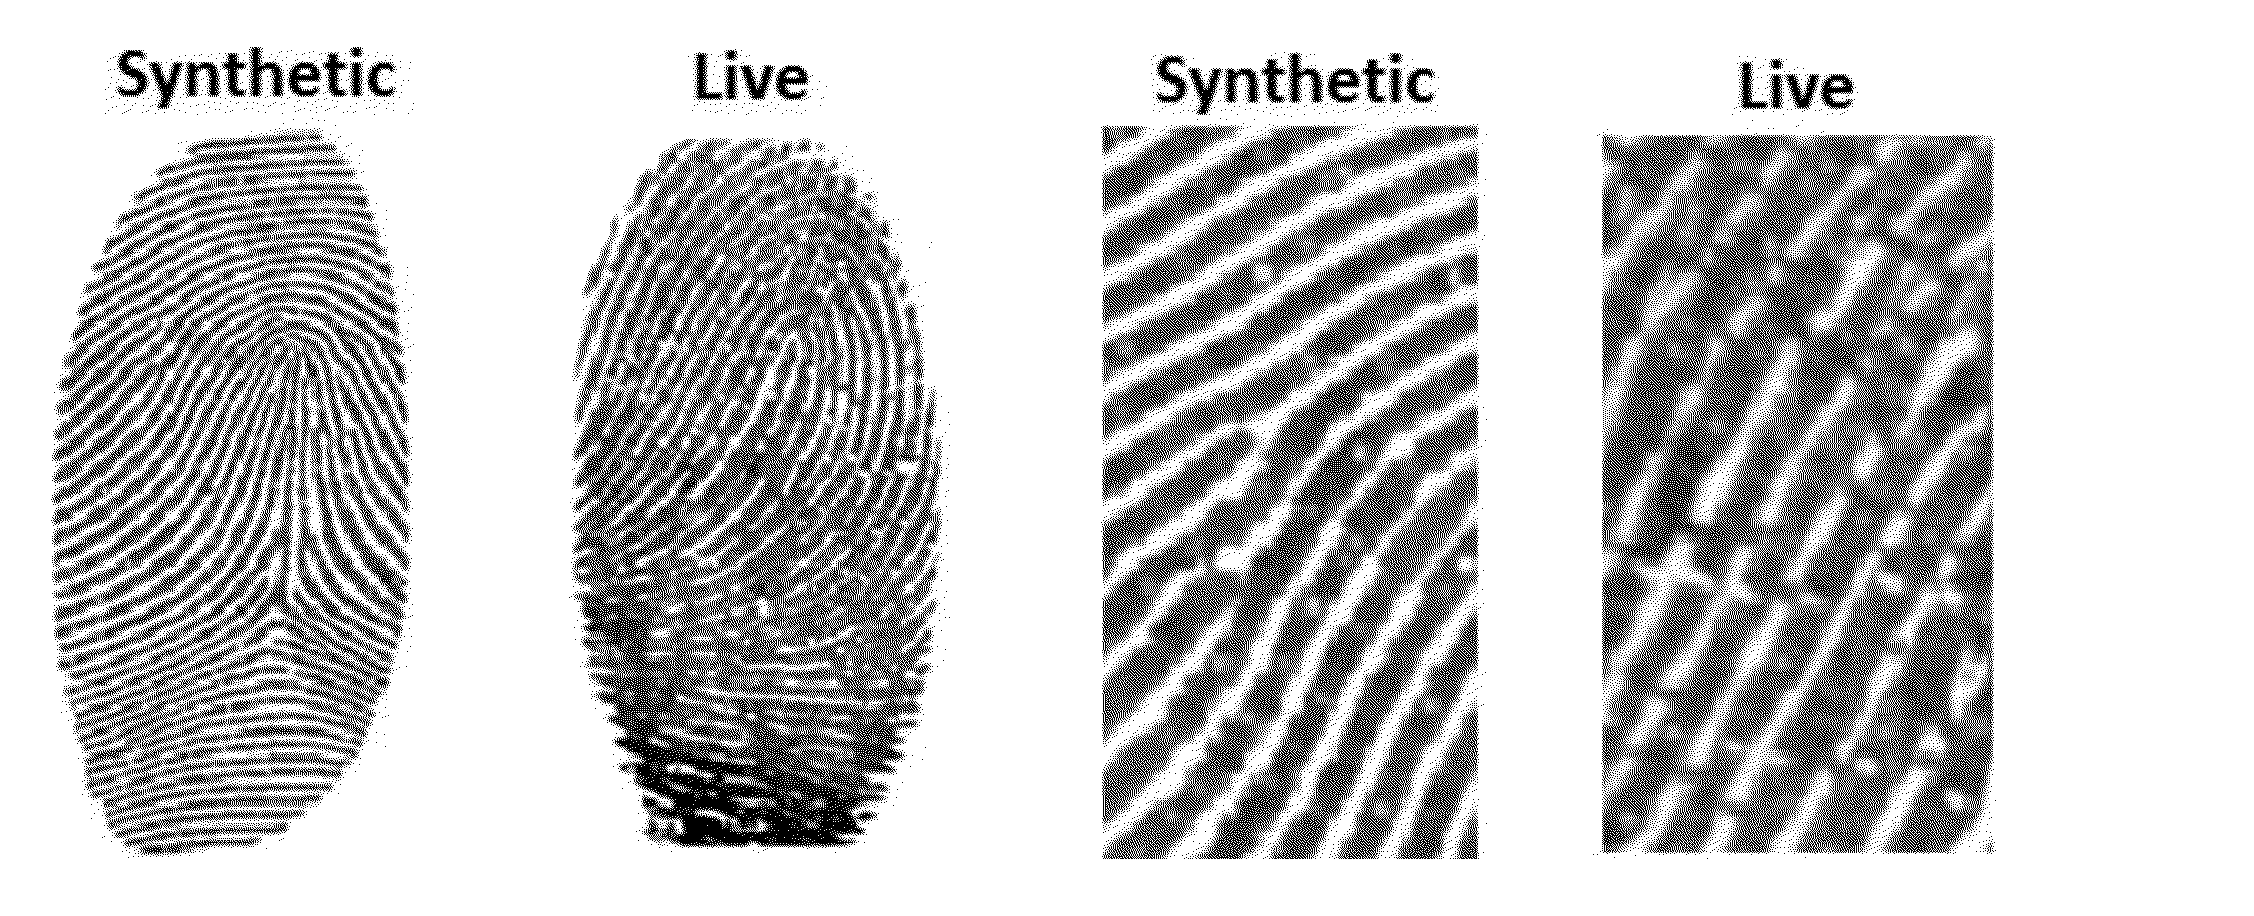 Fingerprint pore analysis for liveness detection